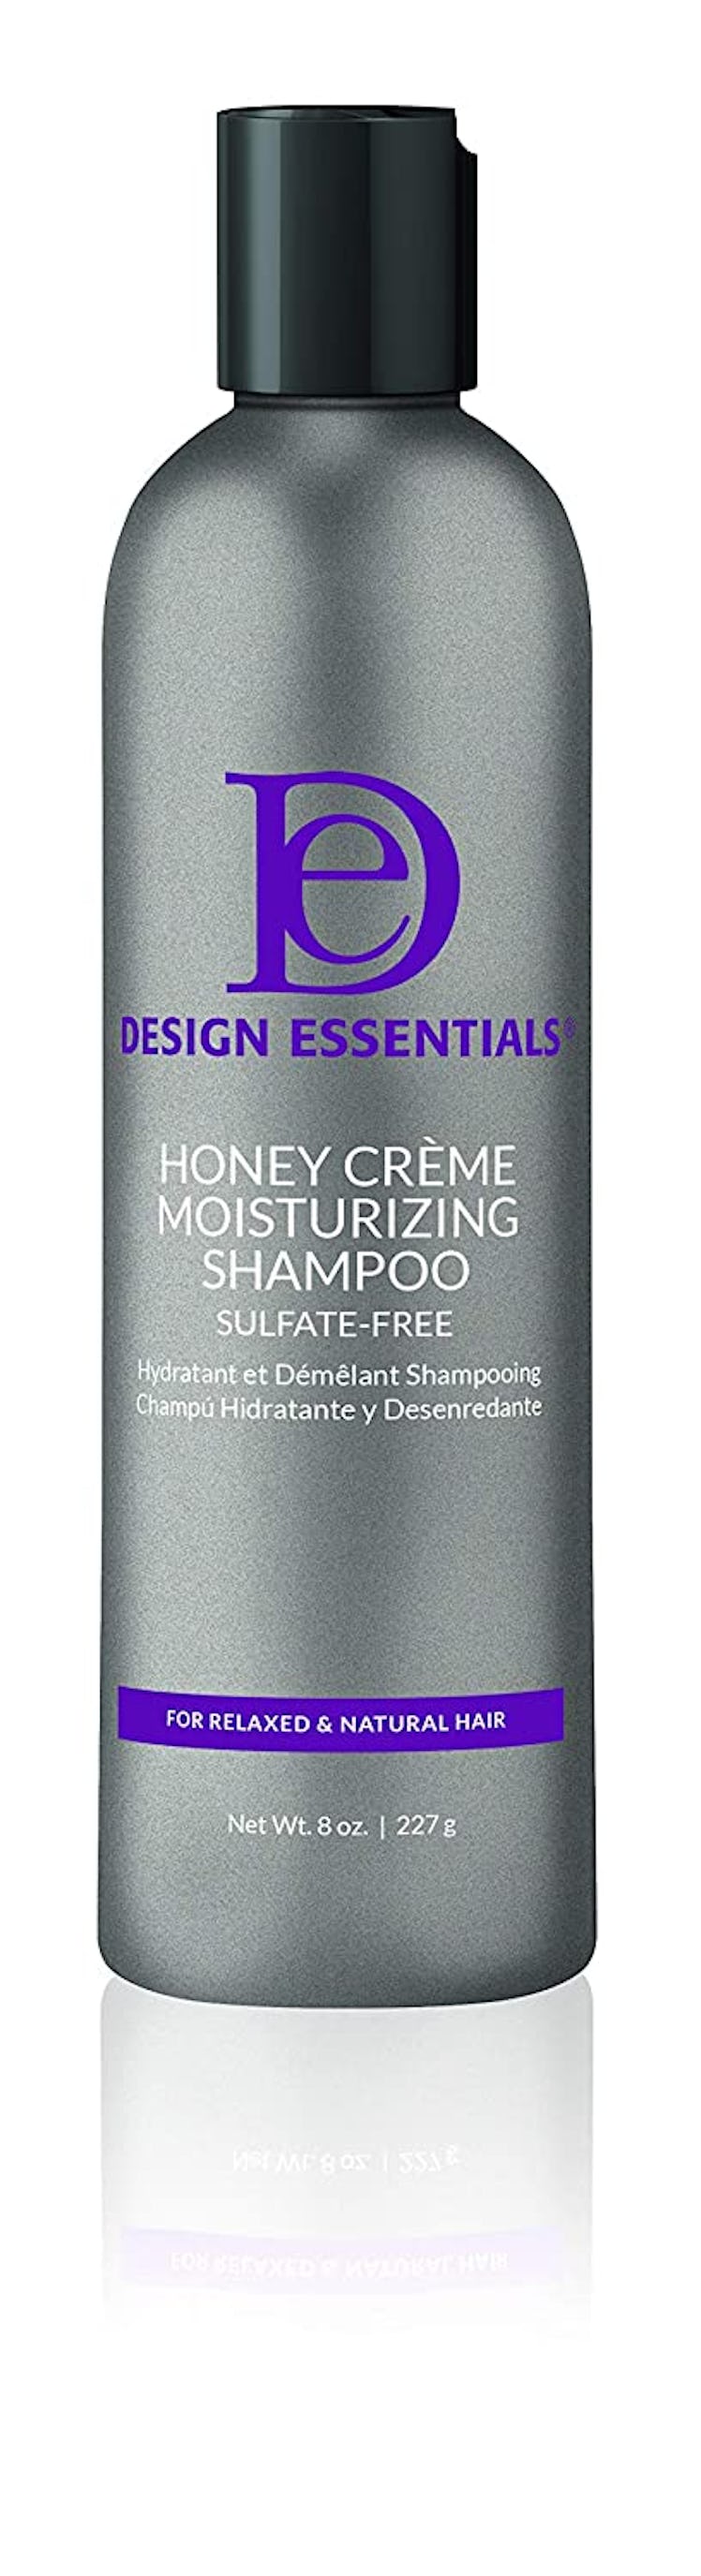 Design Essentials Honey Crème Moisture Retention Shampoo